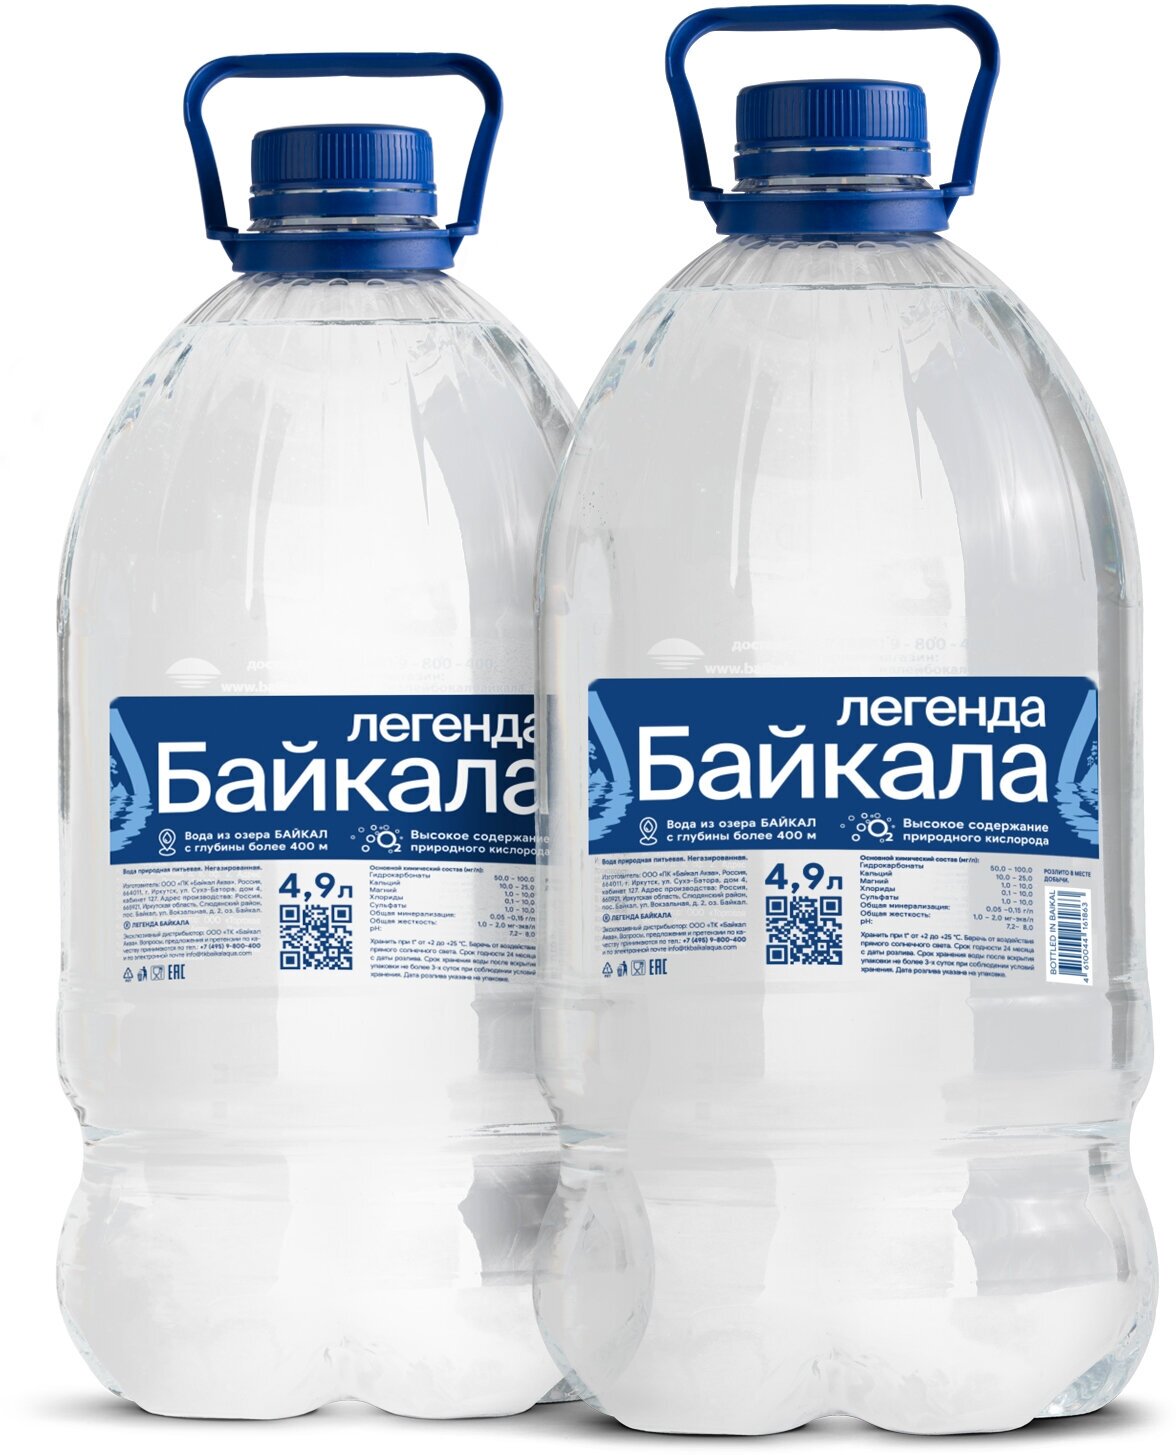 Вода питьевая глубинная Легенда Байкала (Legend of Baikal) 2 шт. по 4.9 л, негазированная, пэт